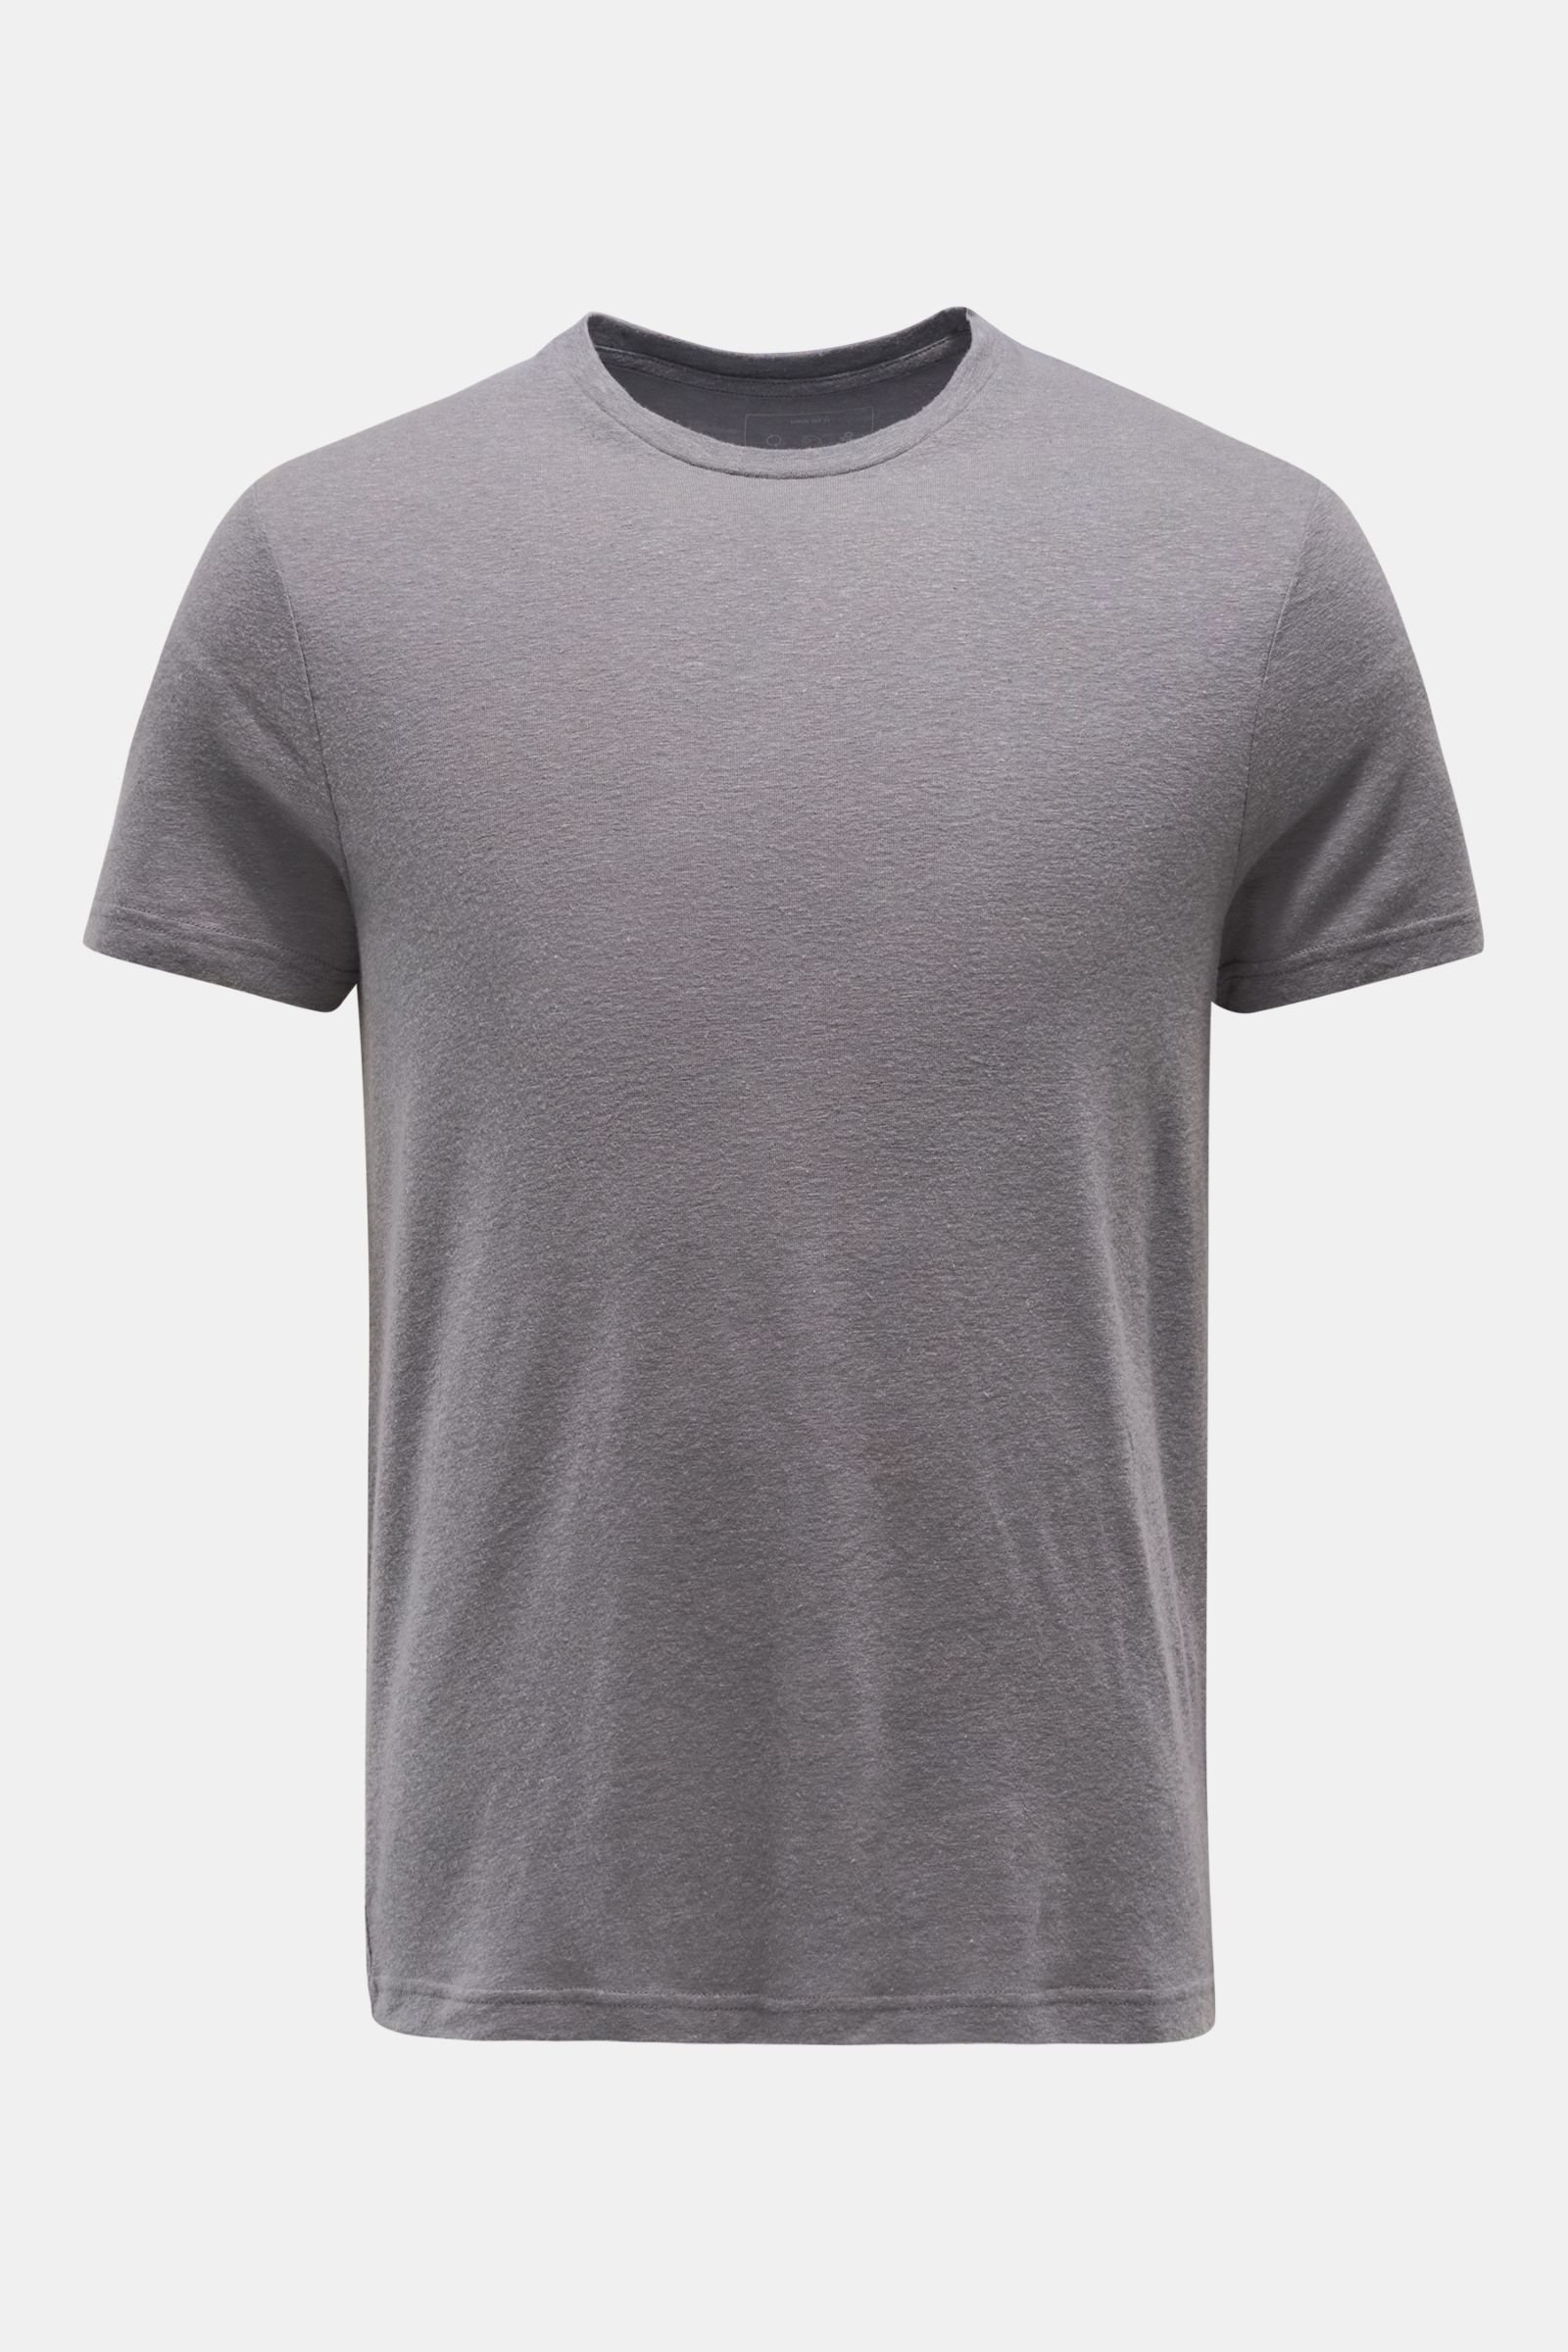 Crew neck T-shirt 'Linen Tee' grey